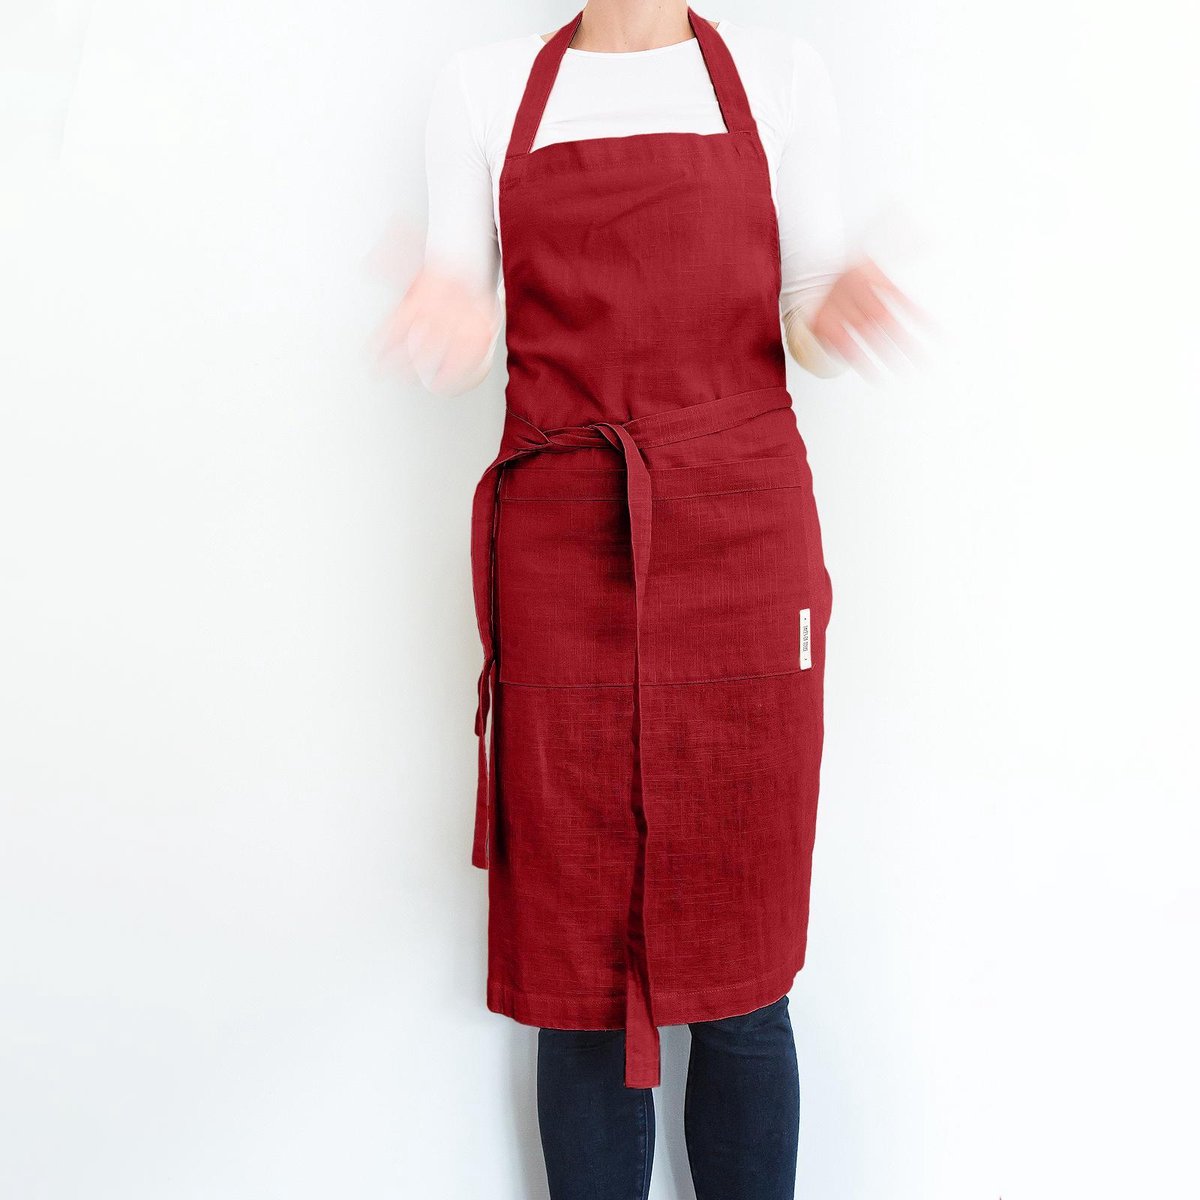 Duurzame lange linnen schort voor dames en heren/ one size effen rode keukenschort met twee zakken/ stevige schort met tailleband